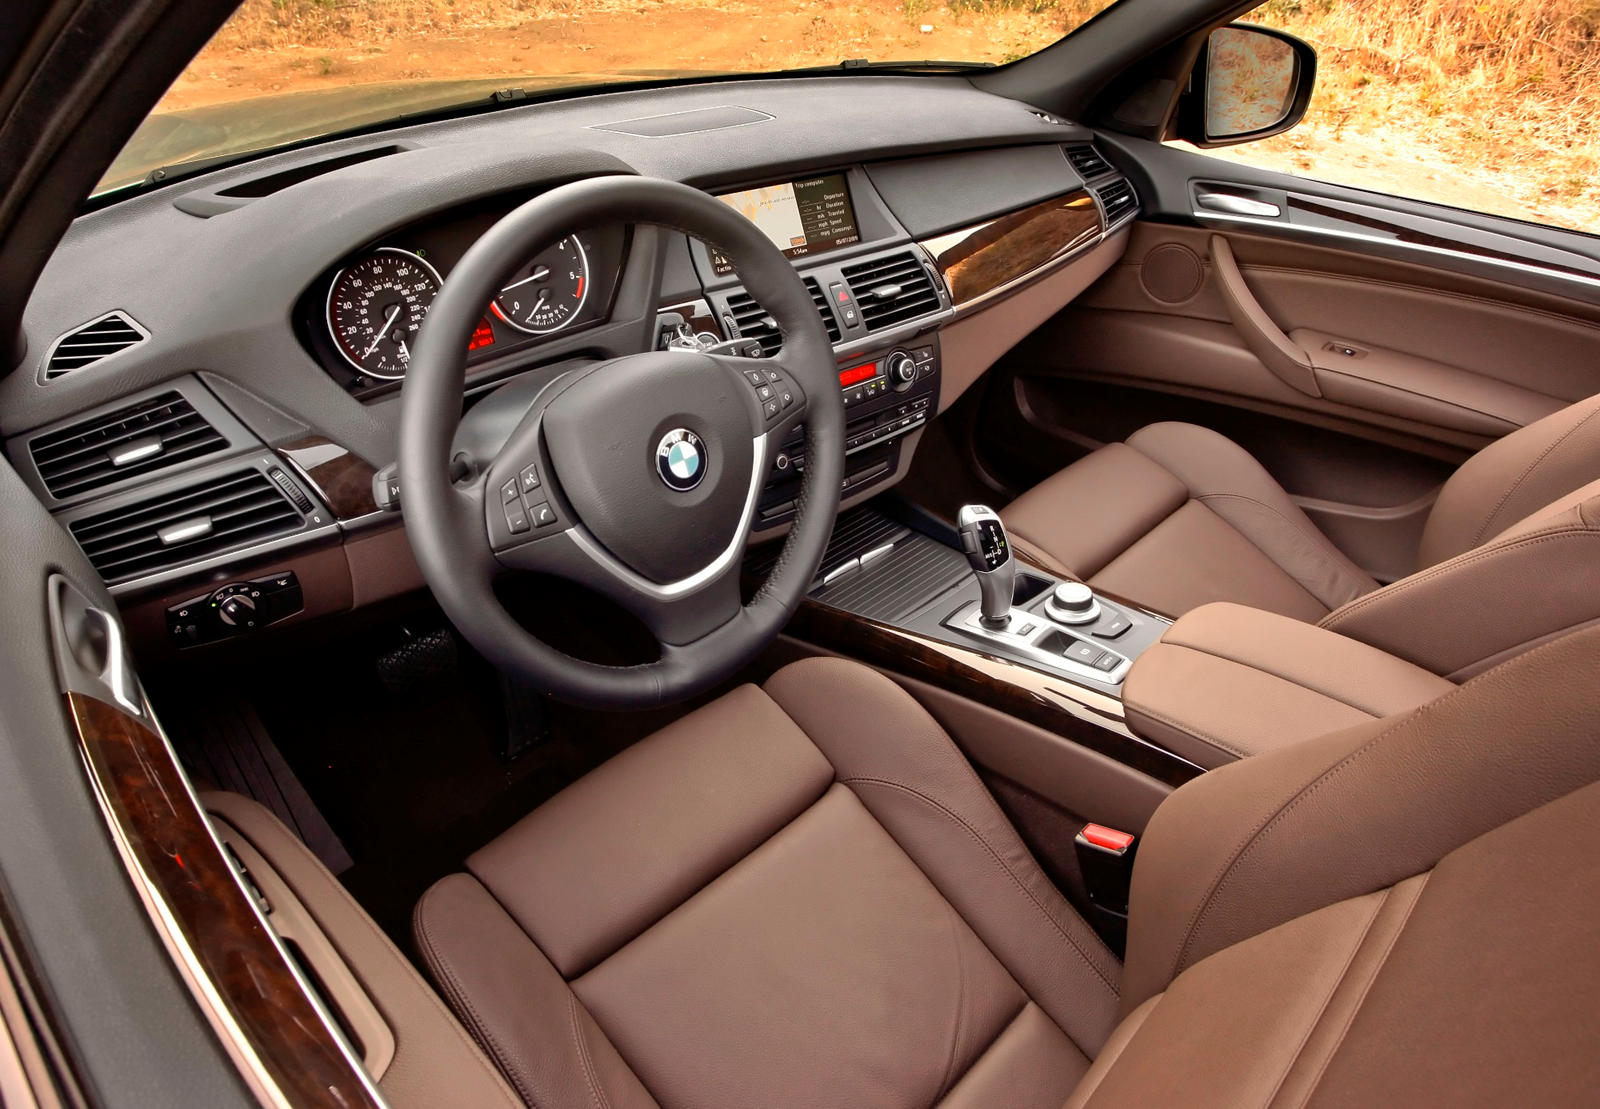 2008 BMW X5 Interior Photos | CarBuzz